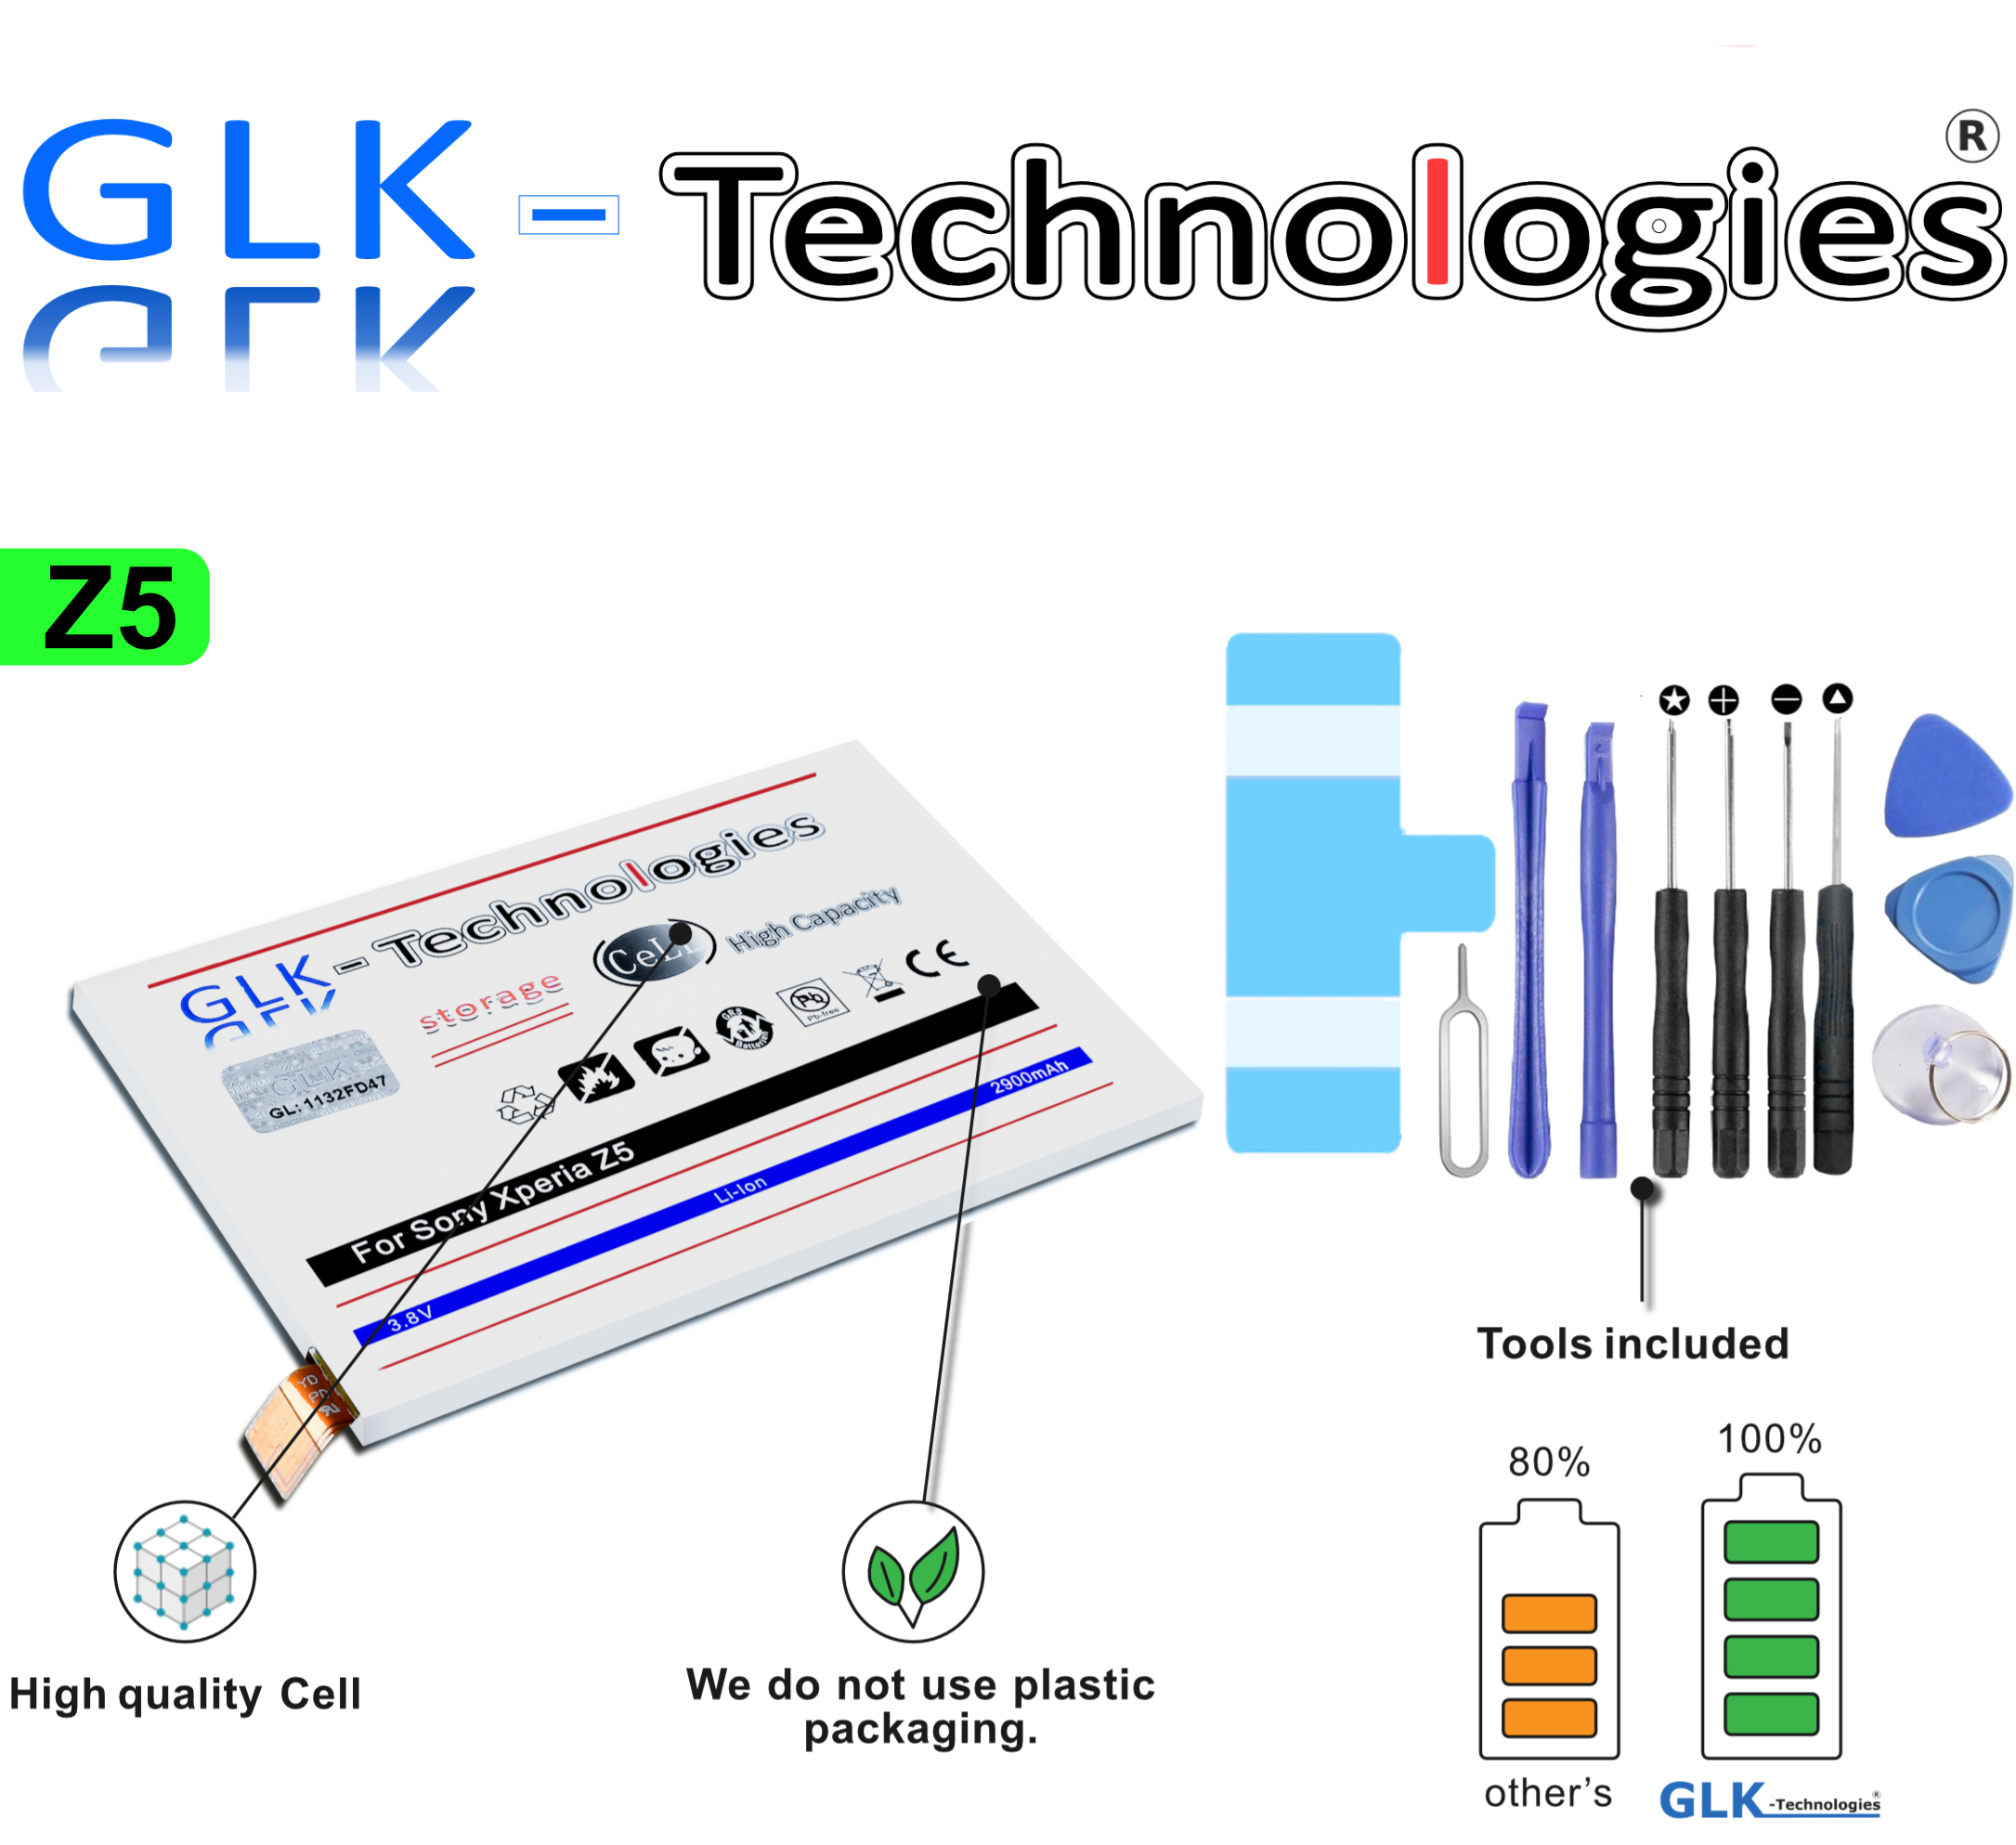 GLK-TECHNOLOGIES High Power Akku für LIS1593ERPC Li-Ion Ersatz Werkzeug Z5 mAh Xperia Smartphone Akku inkl 2900 Sony Battery